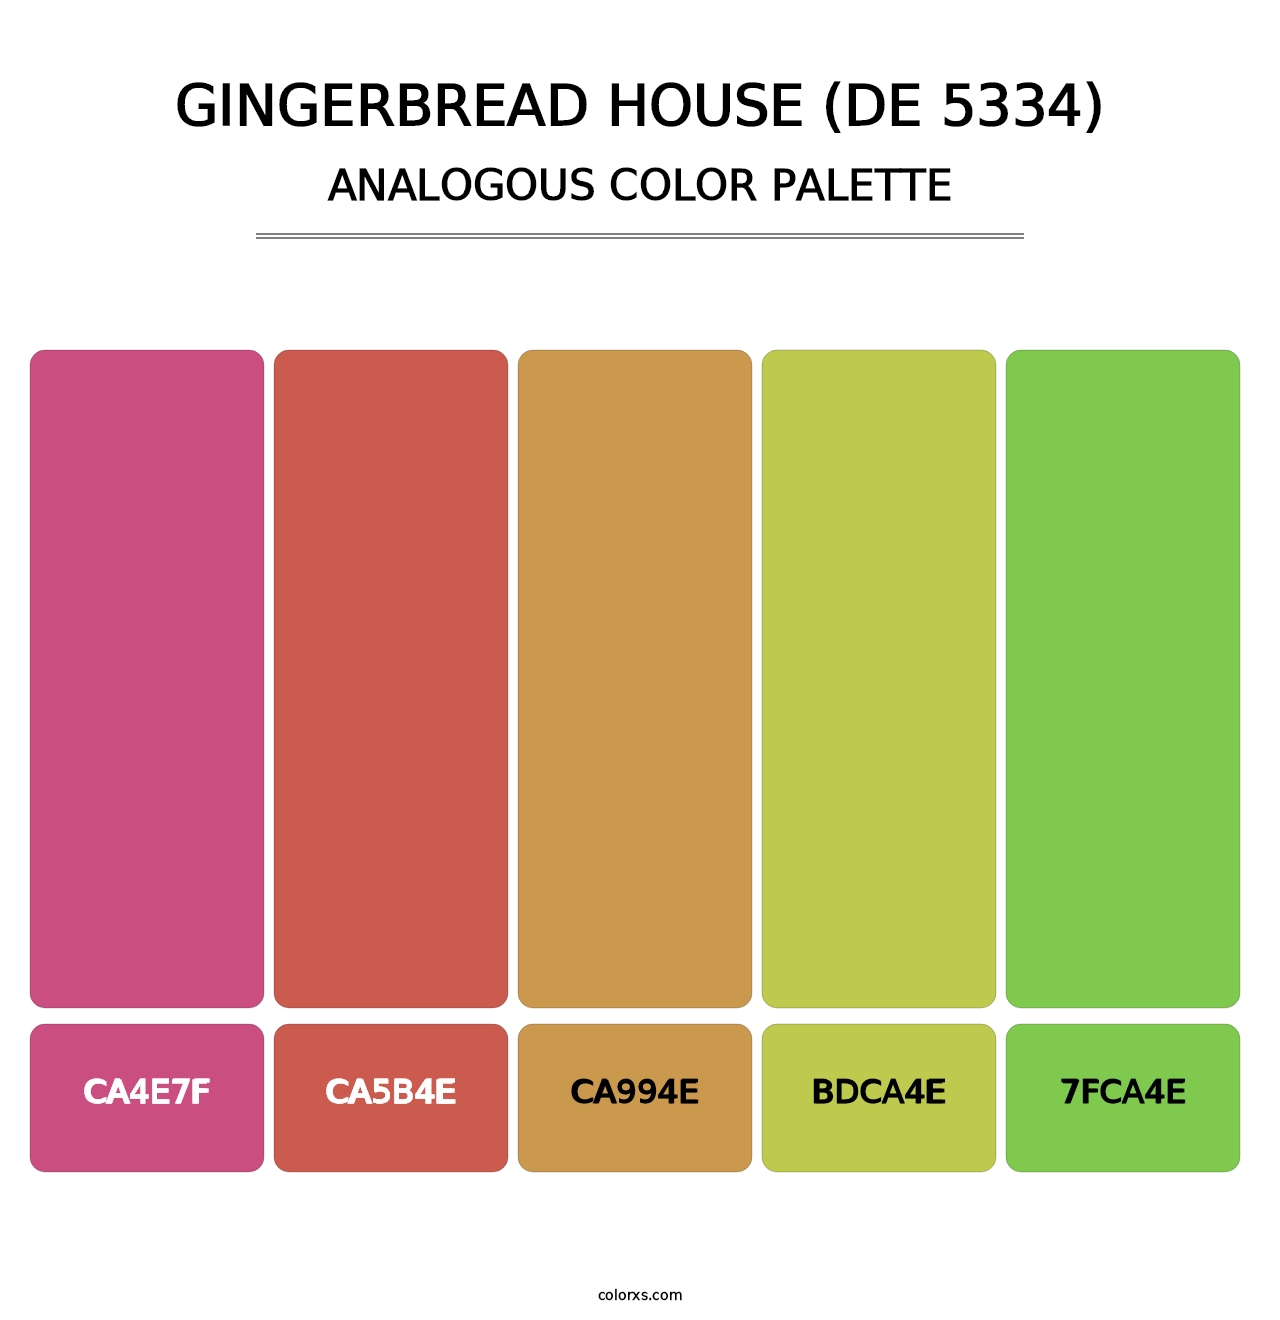 Gingerbread House (DE 5334) - Analogous Color Palette